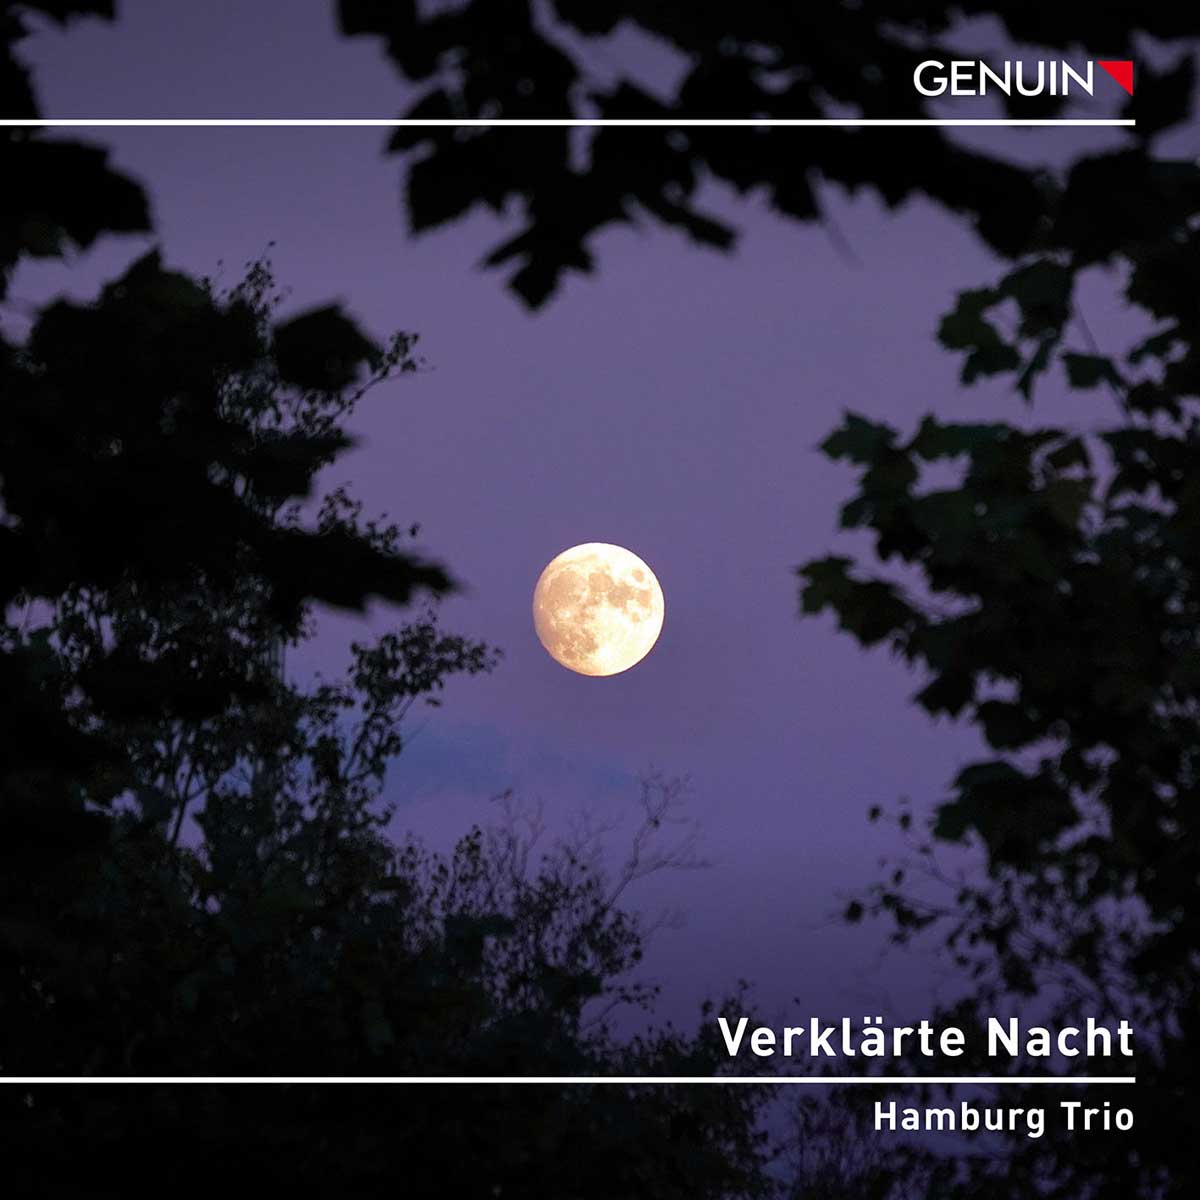 CD album cover 'Verklärte Nacht – Transfigured Night' (GEN 23812) with Hamburg Trio